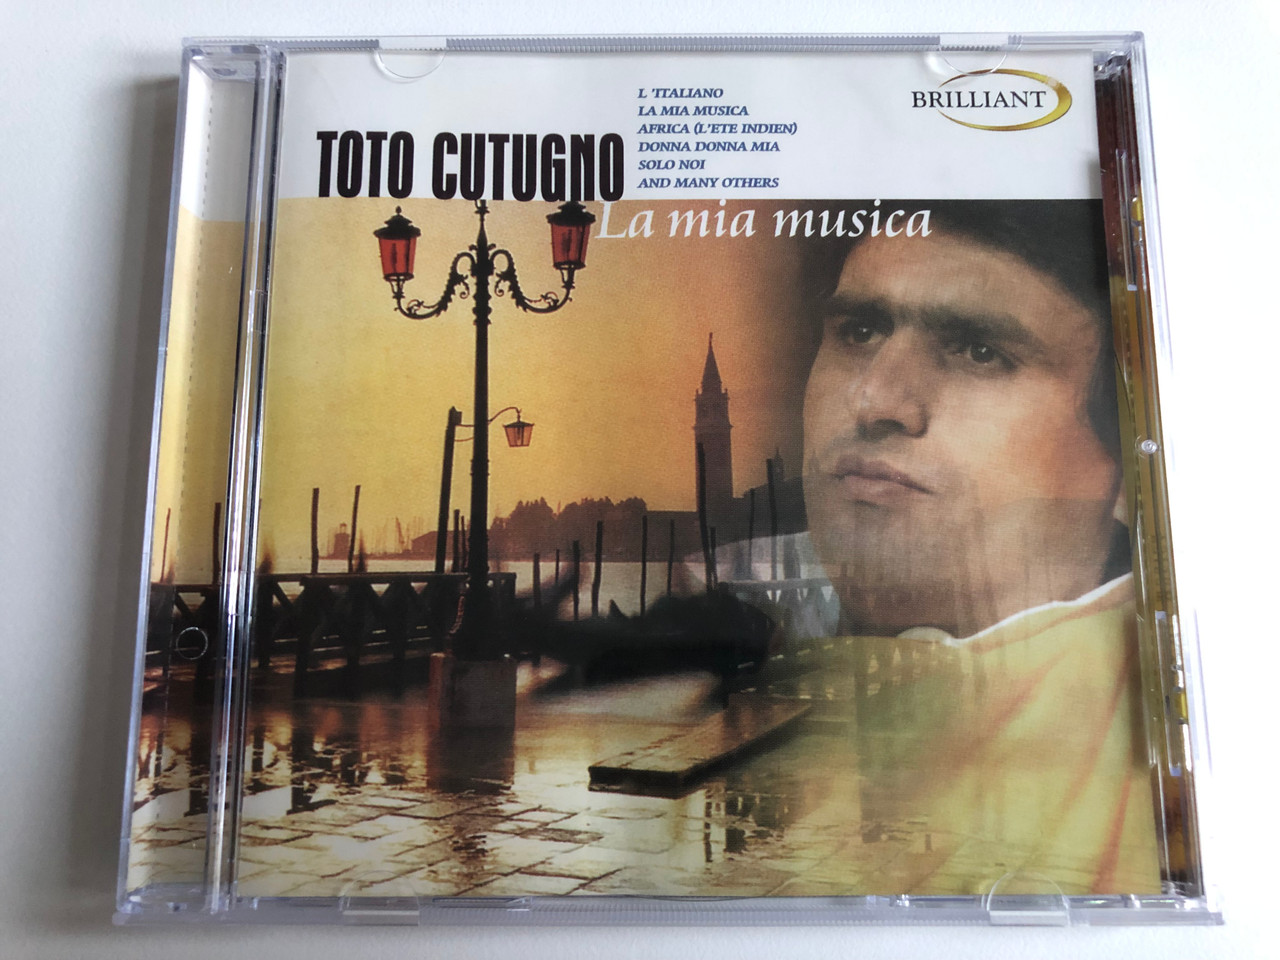 Toto Cutugno – La Mia Musica / L'Italiano, La Mia Musica, Africa (L' Ete  Indien), Donna Donna Mia, Solo Noi, and many others / Brilliant Audio CD  1999 / BT 33016 - bibleinmylanguage